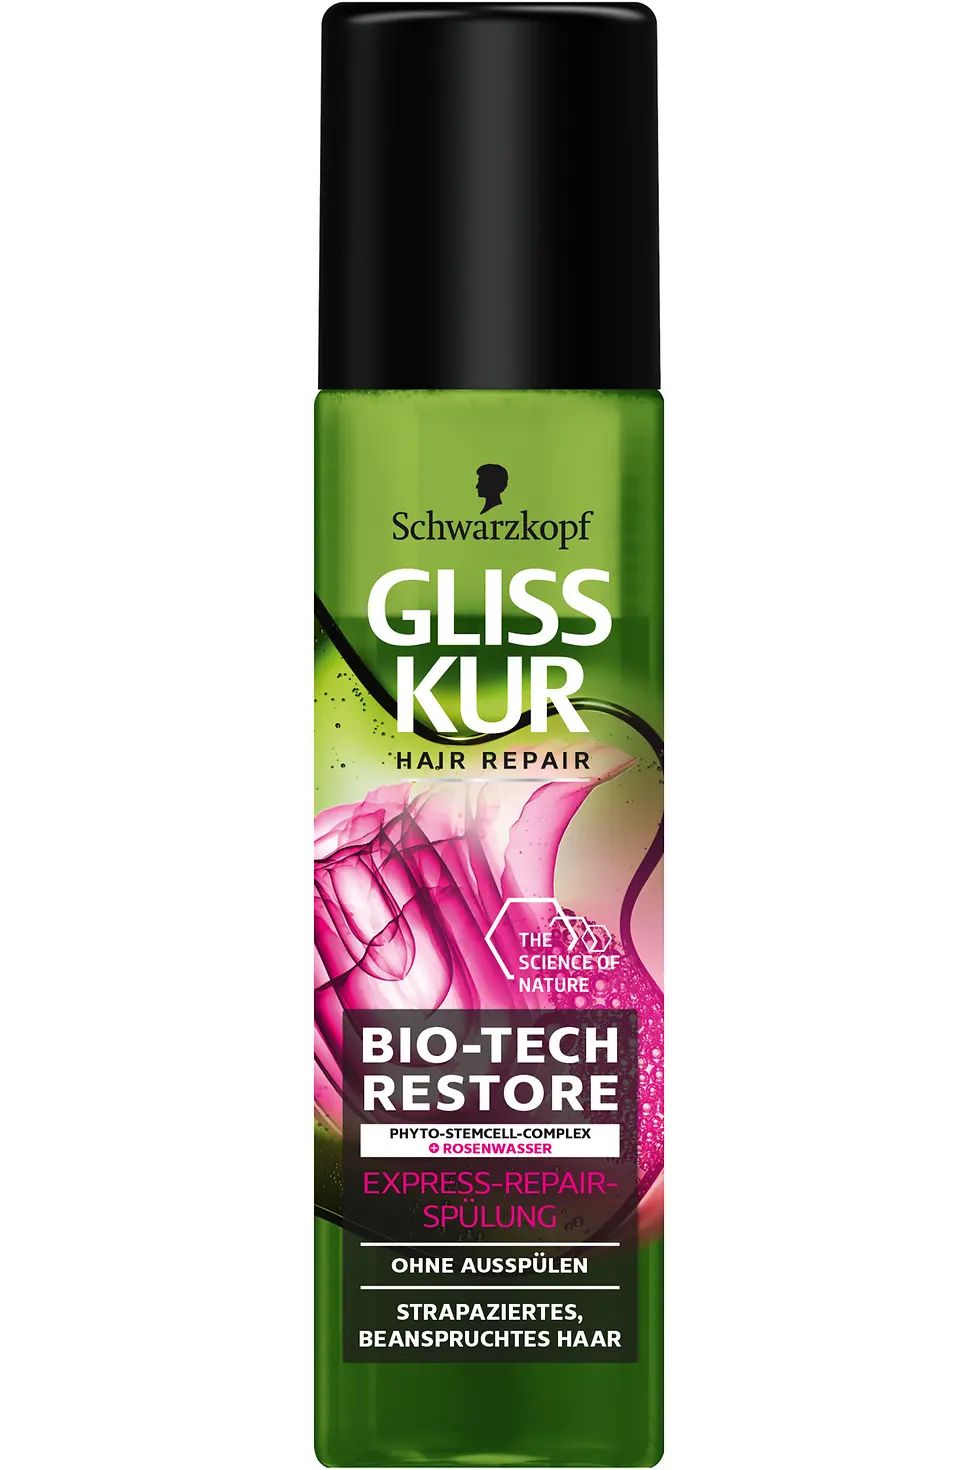 Gliss Kur Bio-Tech Restore Express-Repair-Spülung